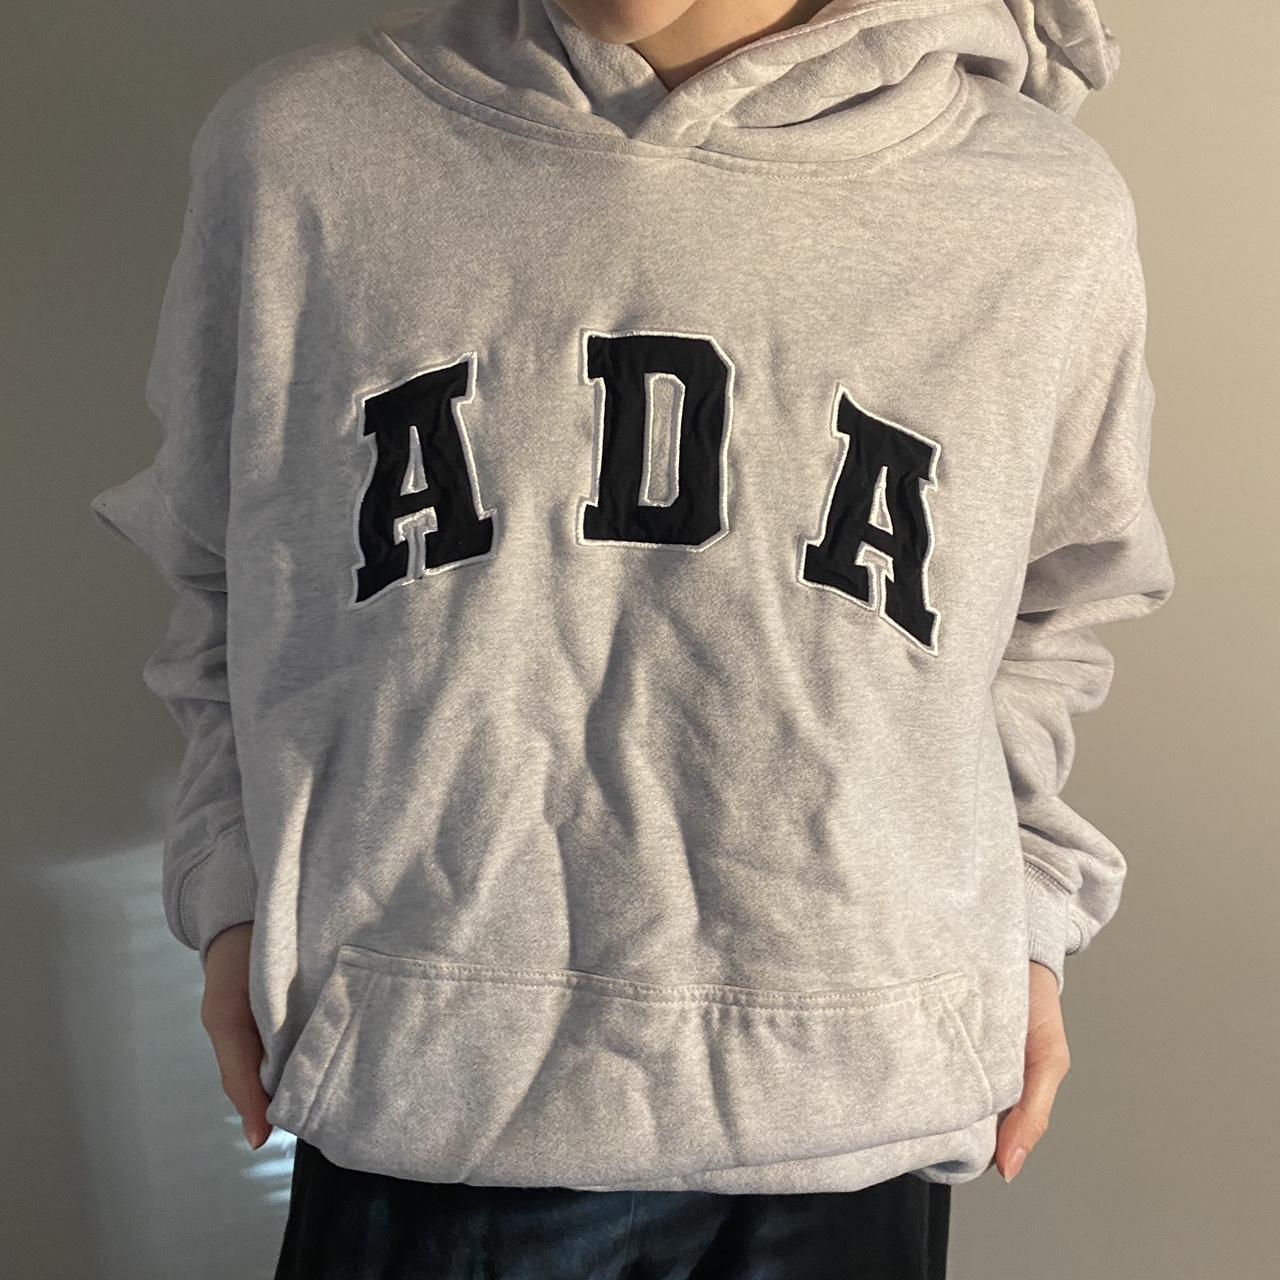 Grey Adanola hoodie streetwear style. Open to... - Depop